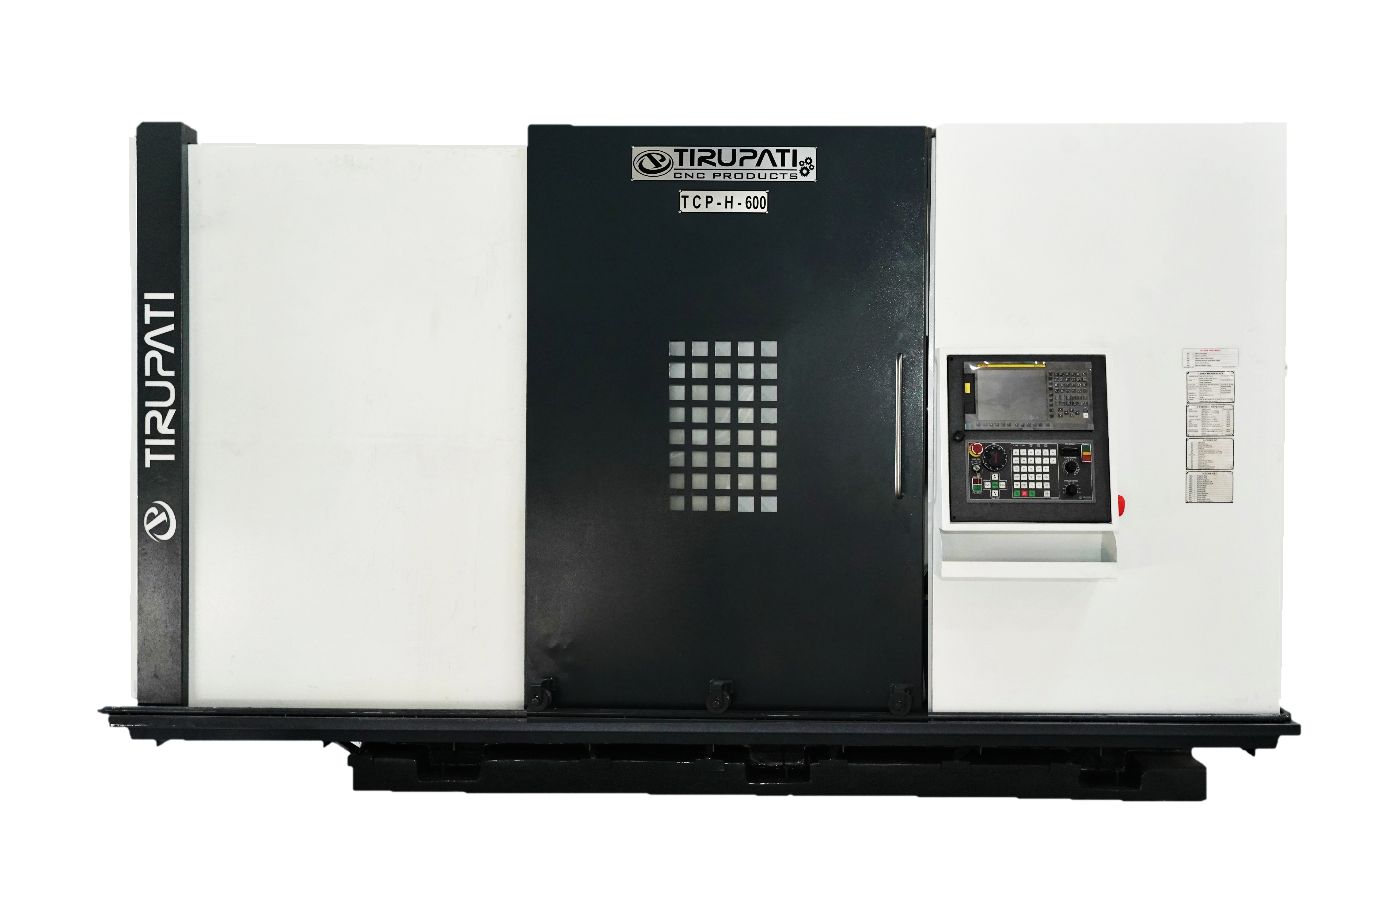 CNC LATHE MACHINE - TCP H-600L-900